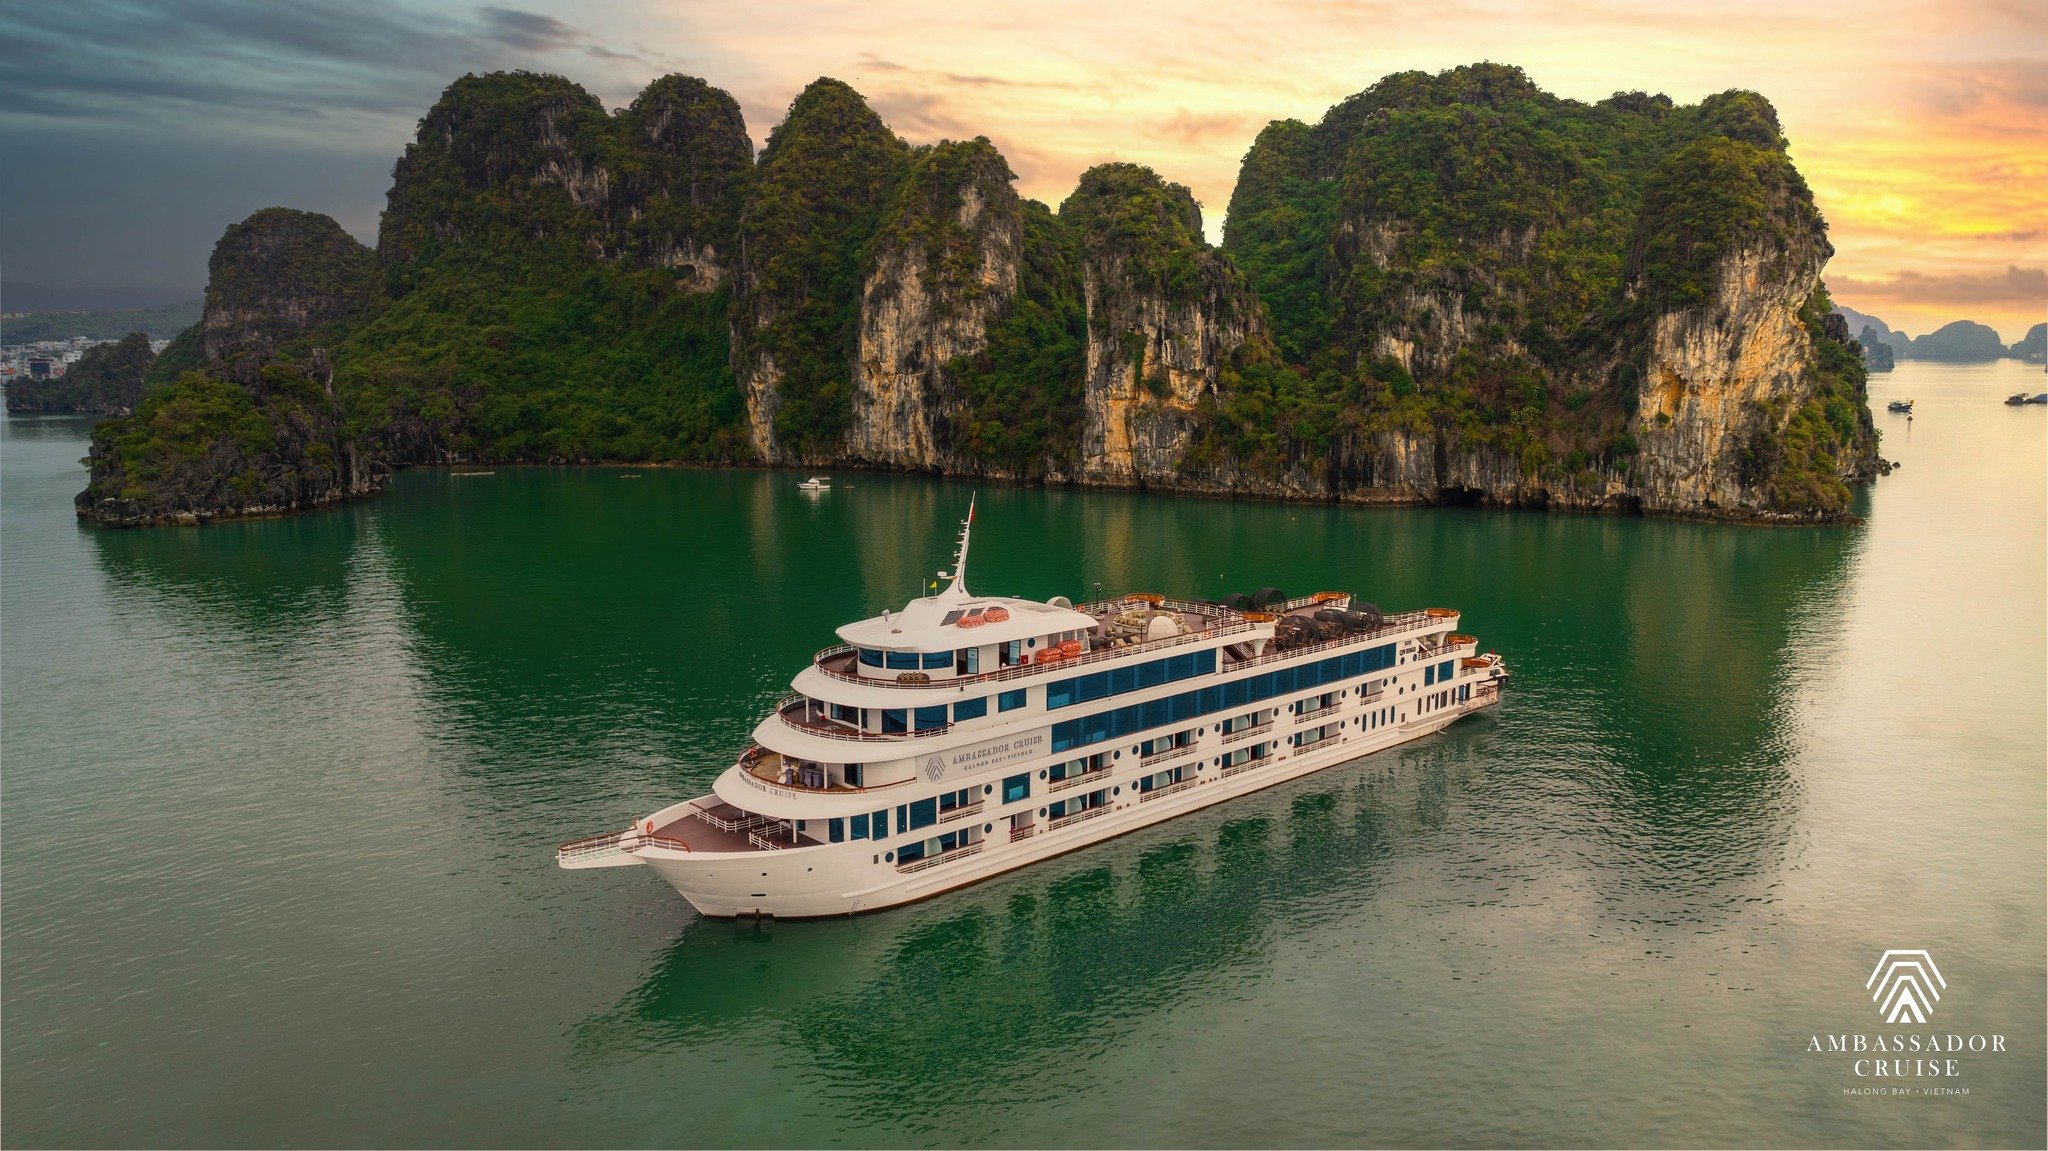 Tour du thuyền Ambassador 5 sao thăm vịnh Hạ Long 8 tiếng